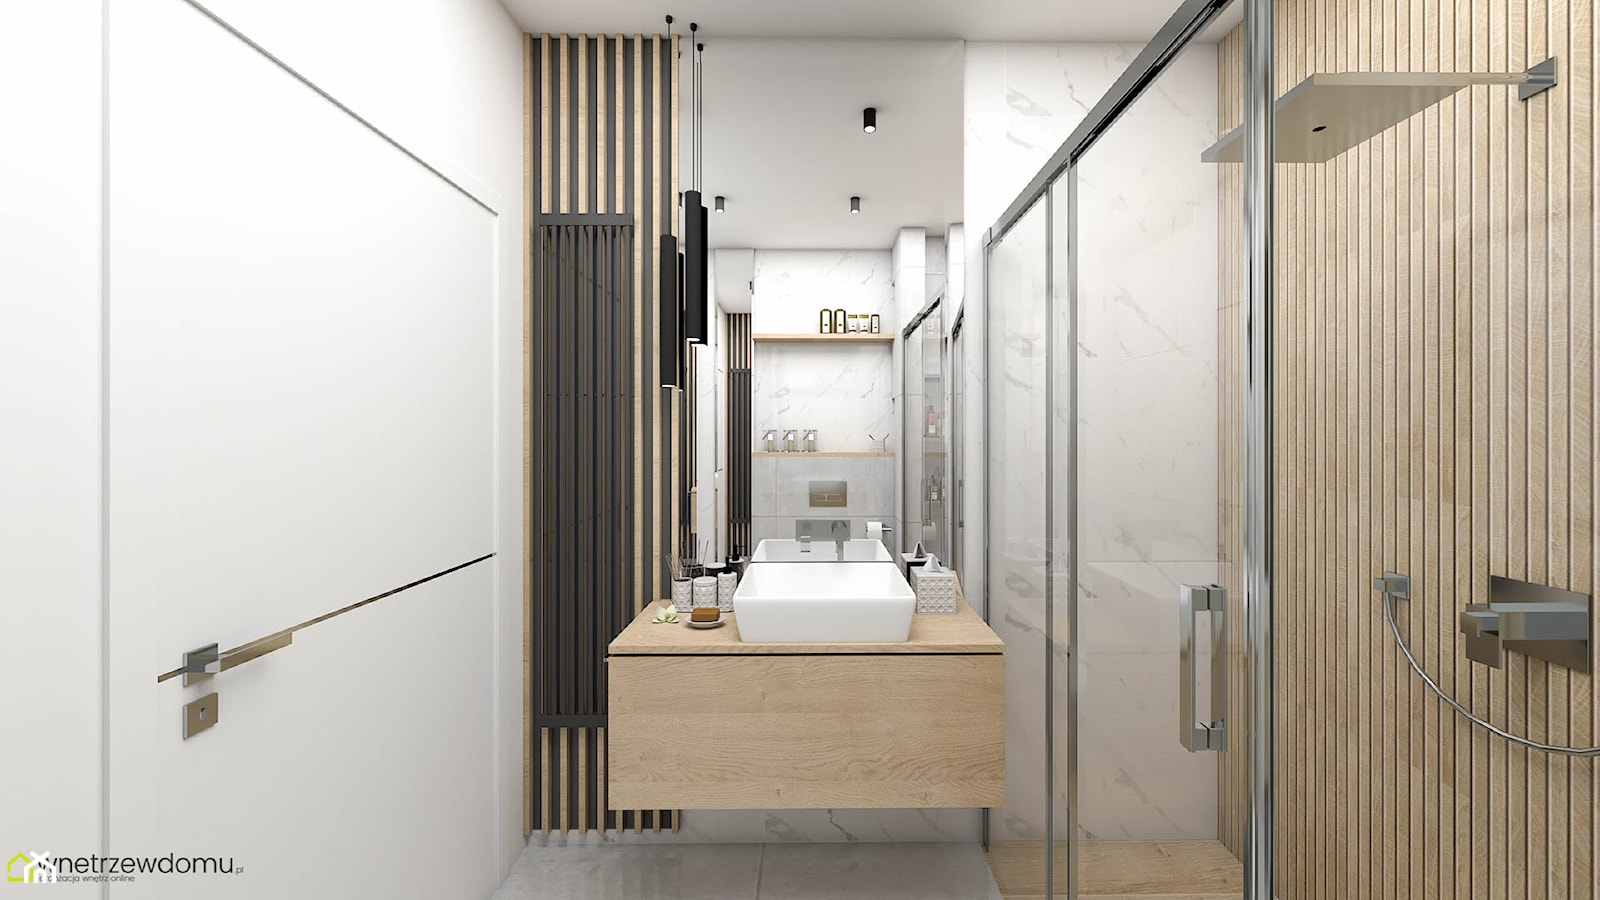 Łazienka z kabiną prysznicową -szarość i drewno - zdjęcie od wnetrzewdomu - Homebook